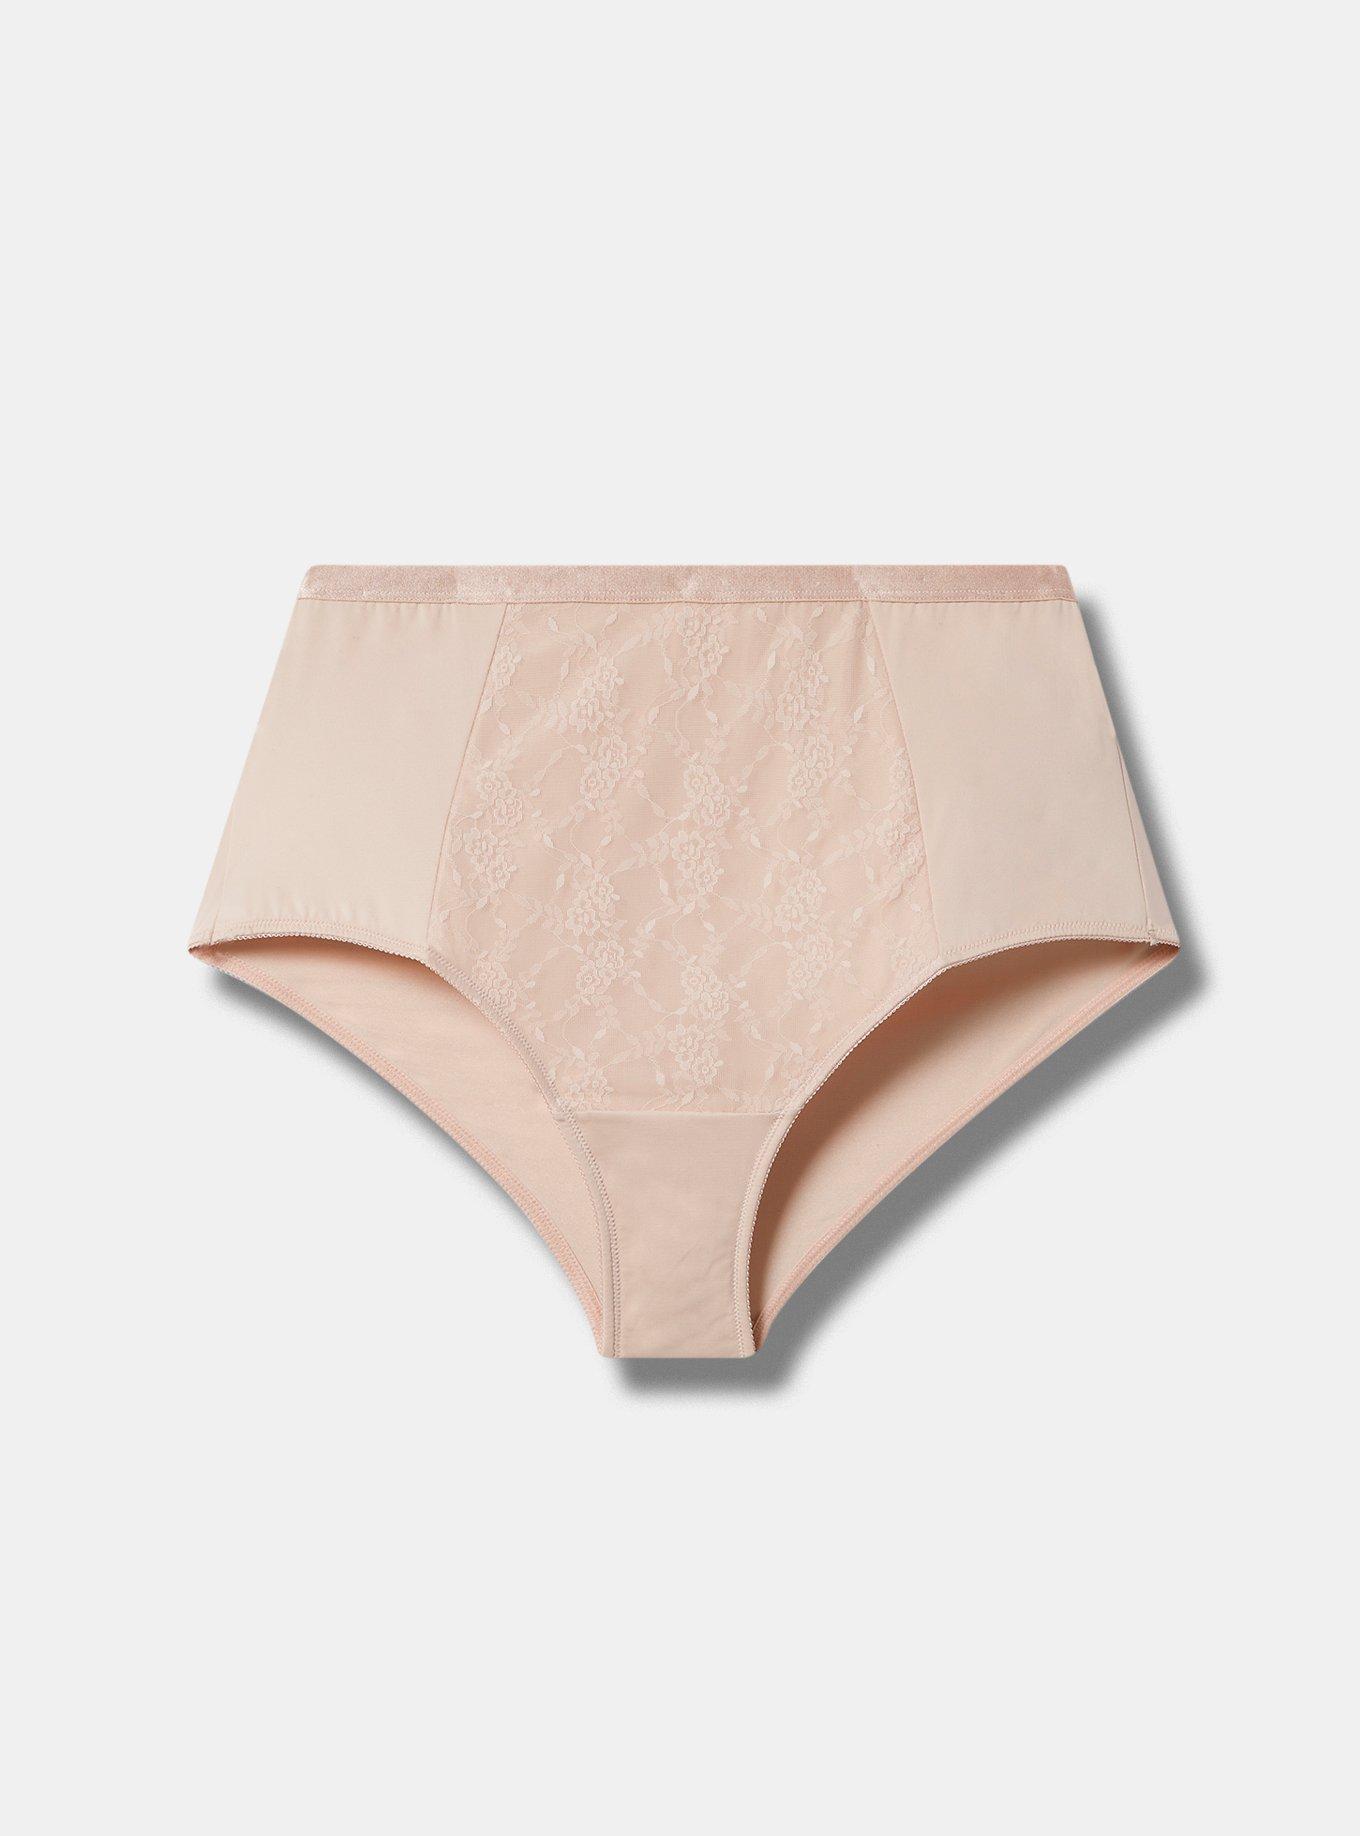 Nylon Panties Size 9 USA 18 AU NOS -  Canada